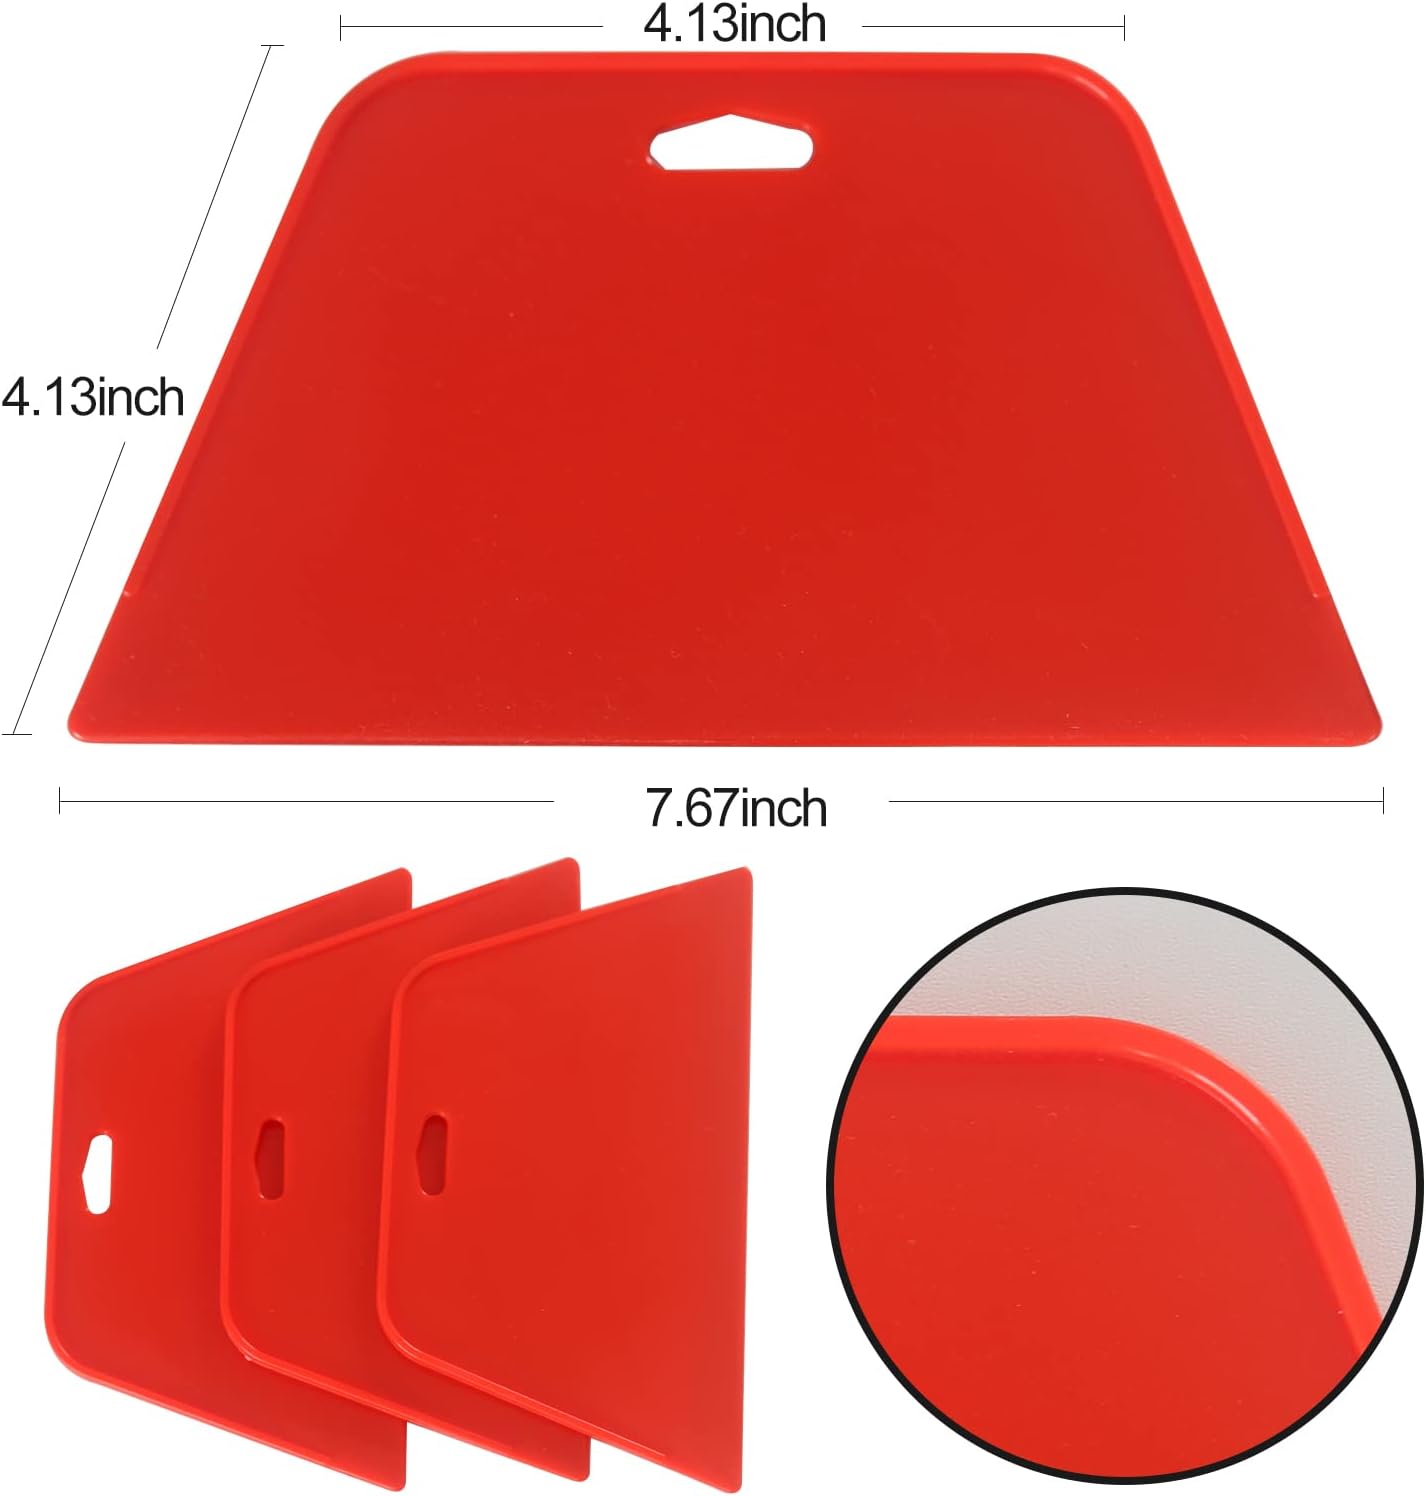 Wallpaper Smoothing Tool Kit for Applying Peel and Stick Wallpaper Vinyl Backsplash Tile